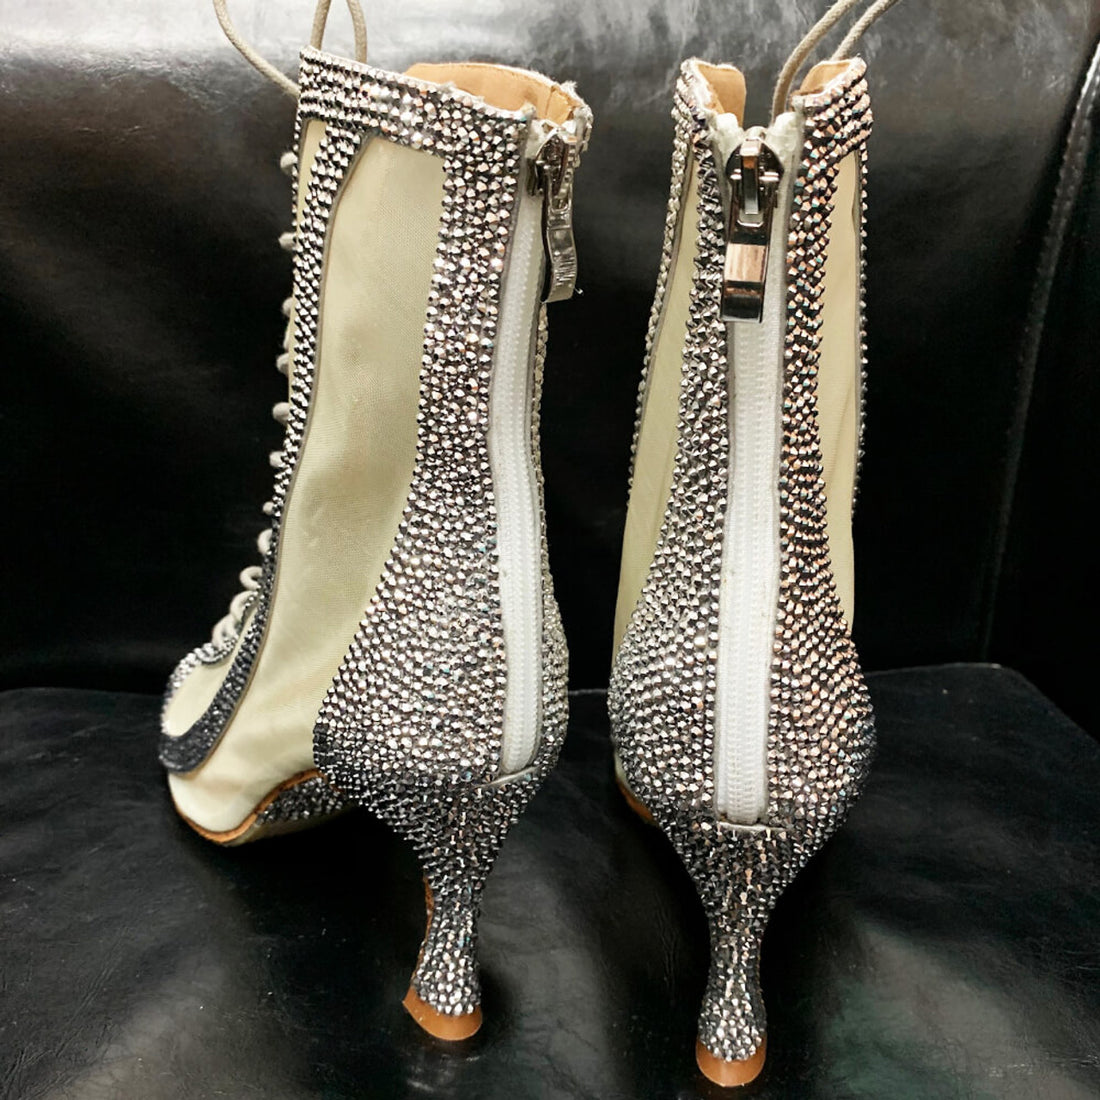 Sierra-womens dance shoes